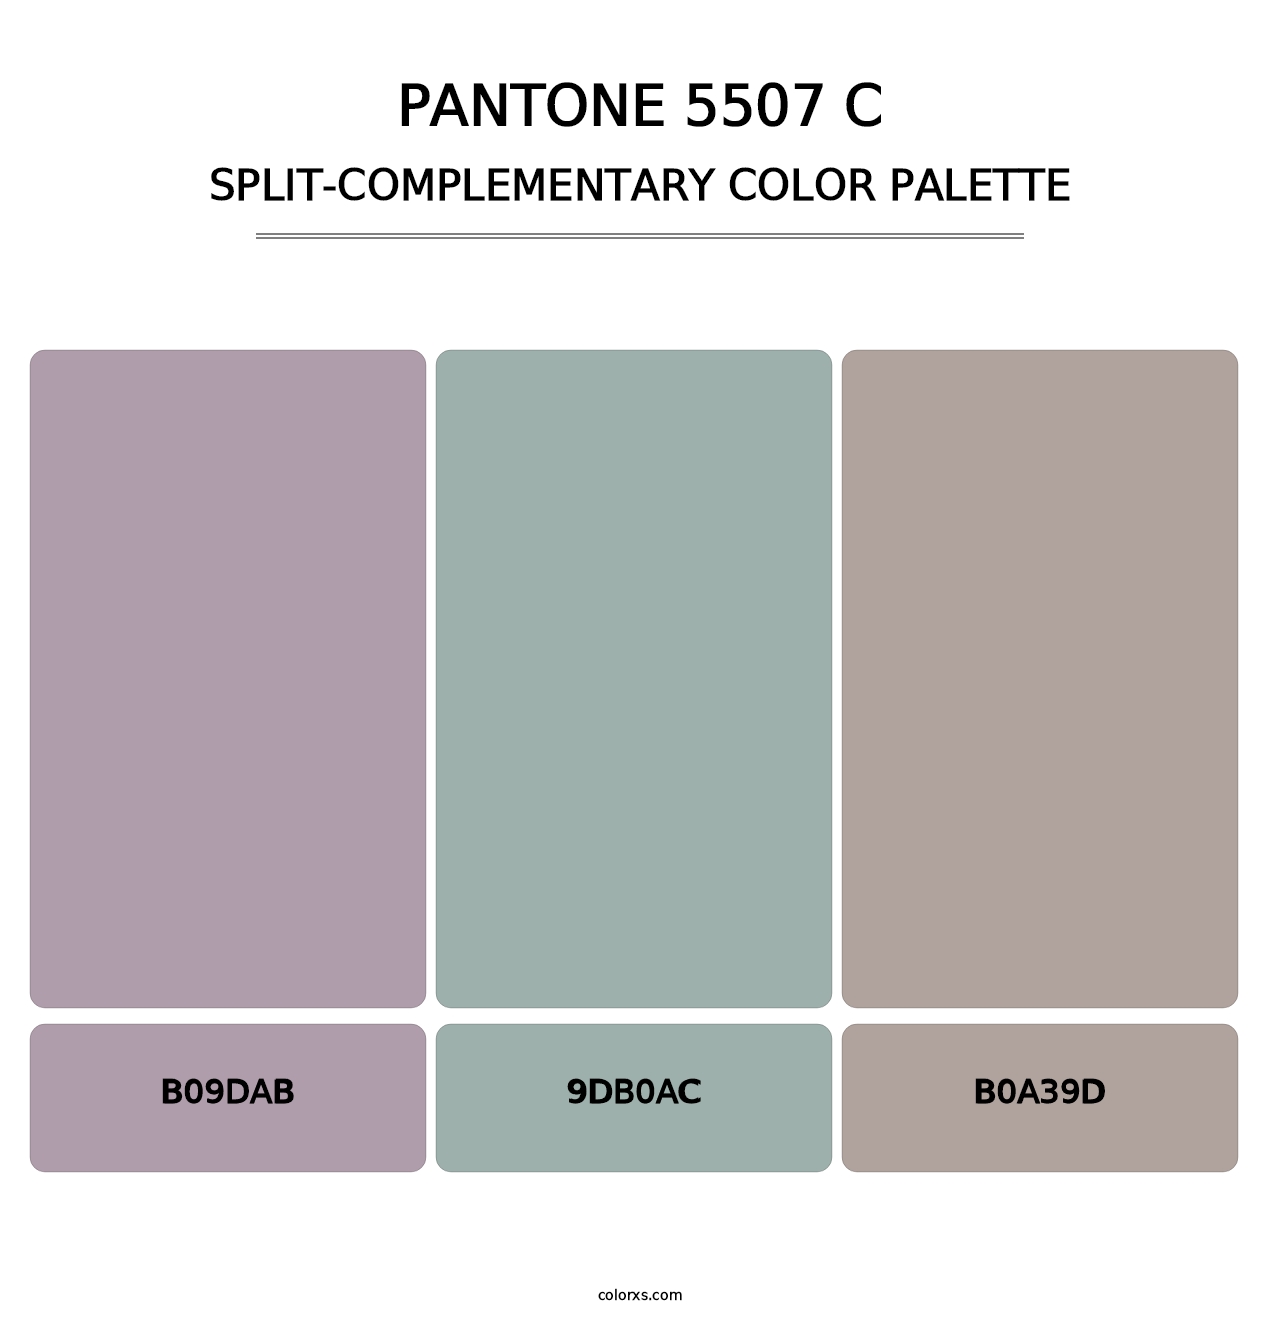 PANTONE 5507 C - Split-Complementary Color Palette